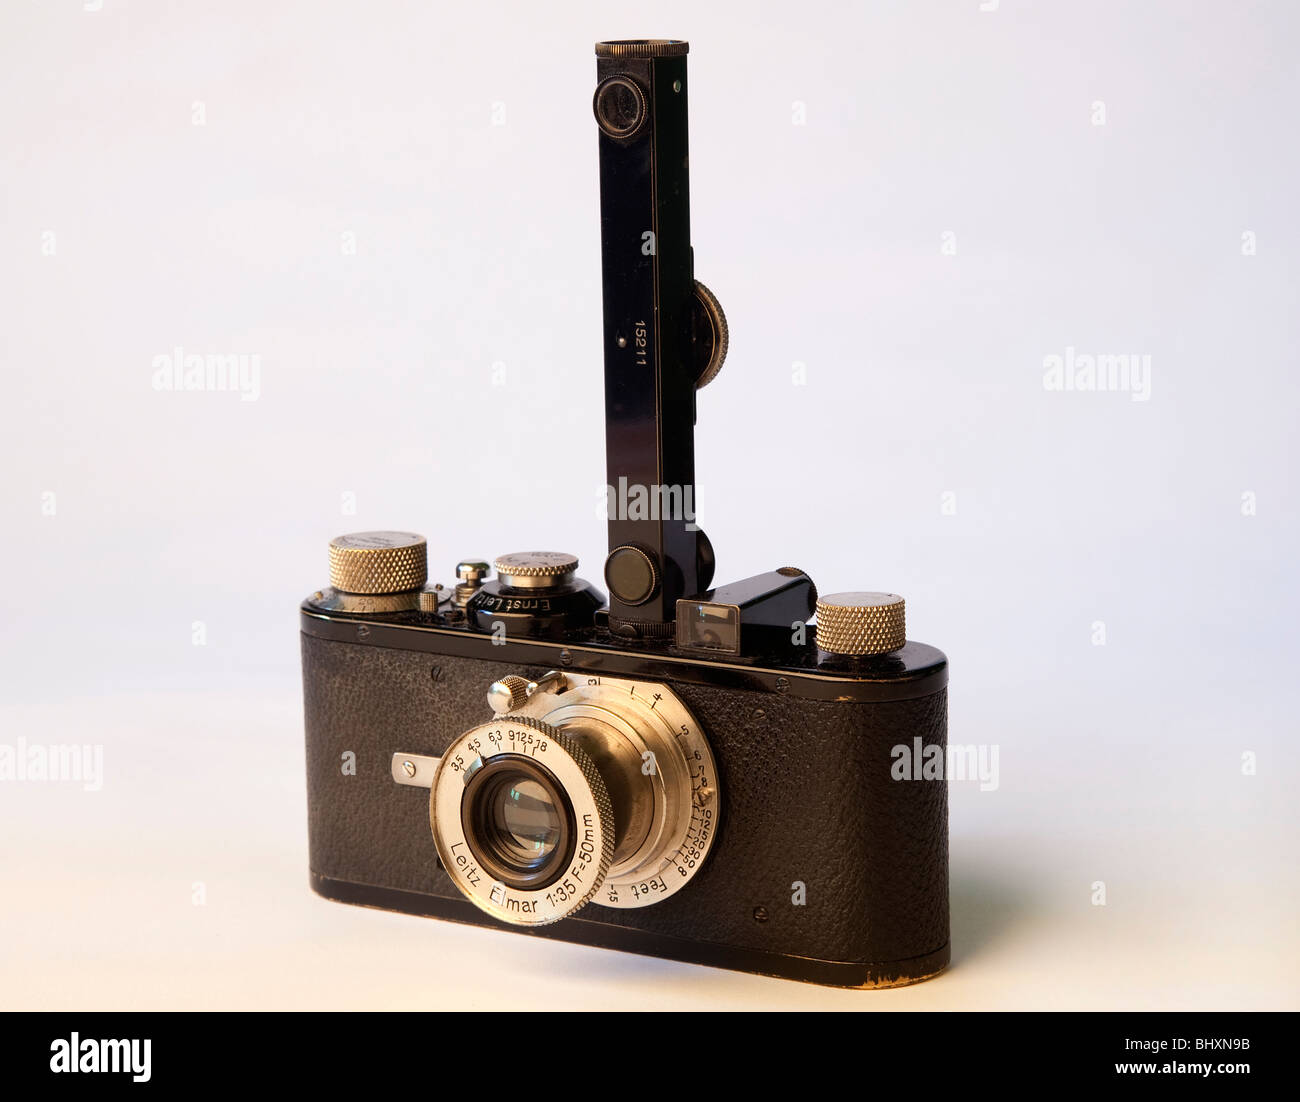 2.Leica 1a (1930) Stock Photo